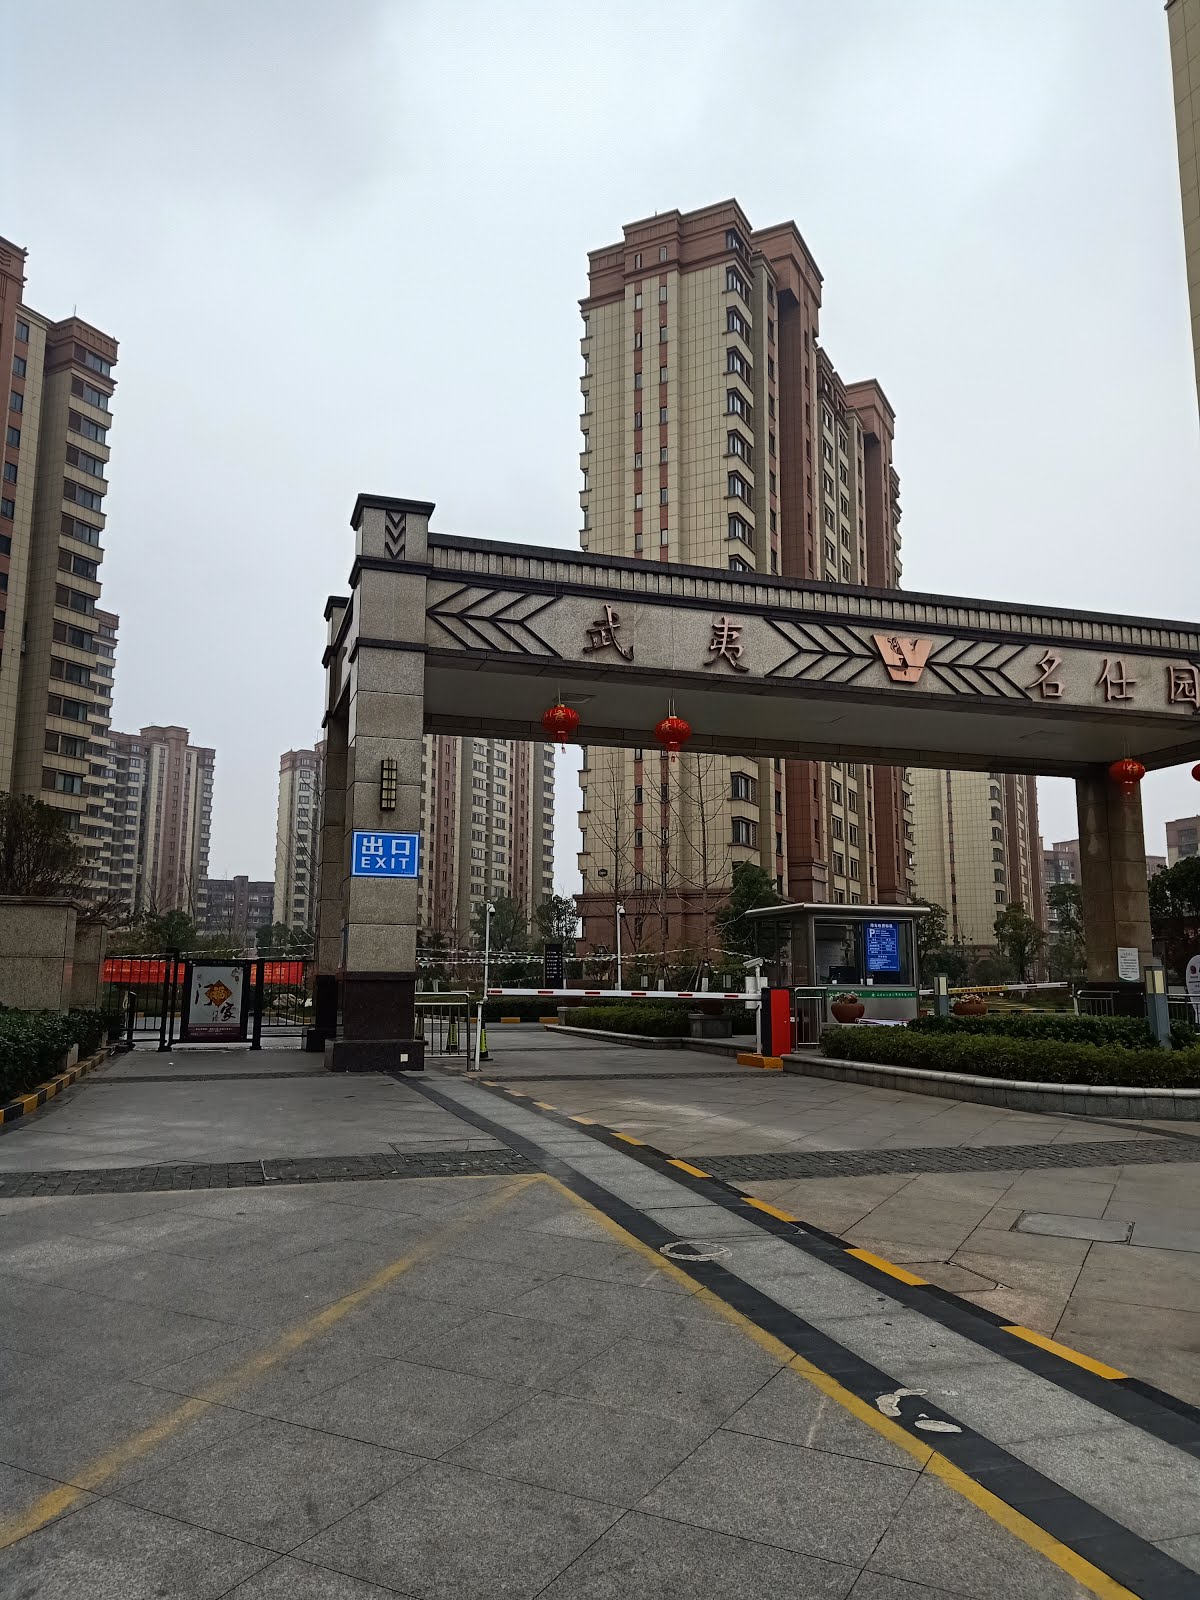 Pengalaman Sewa Apartemen di Nanjing, Cina - Journey of The Week